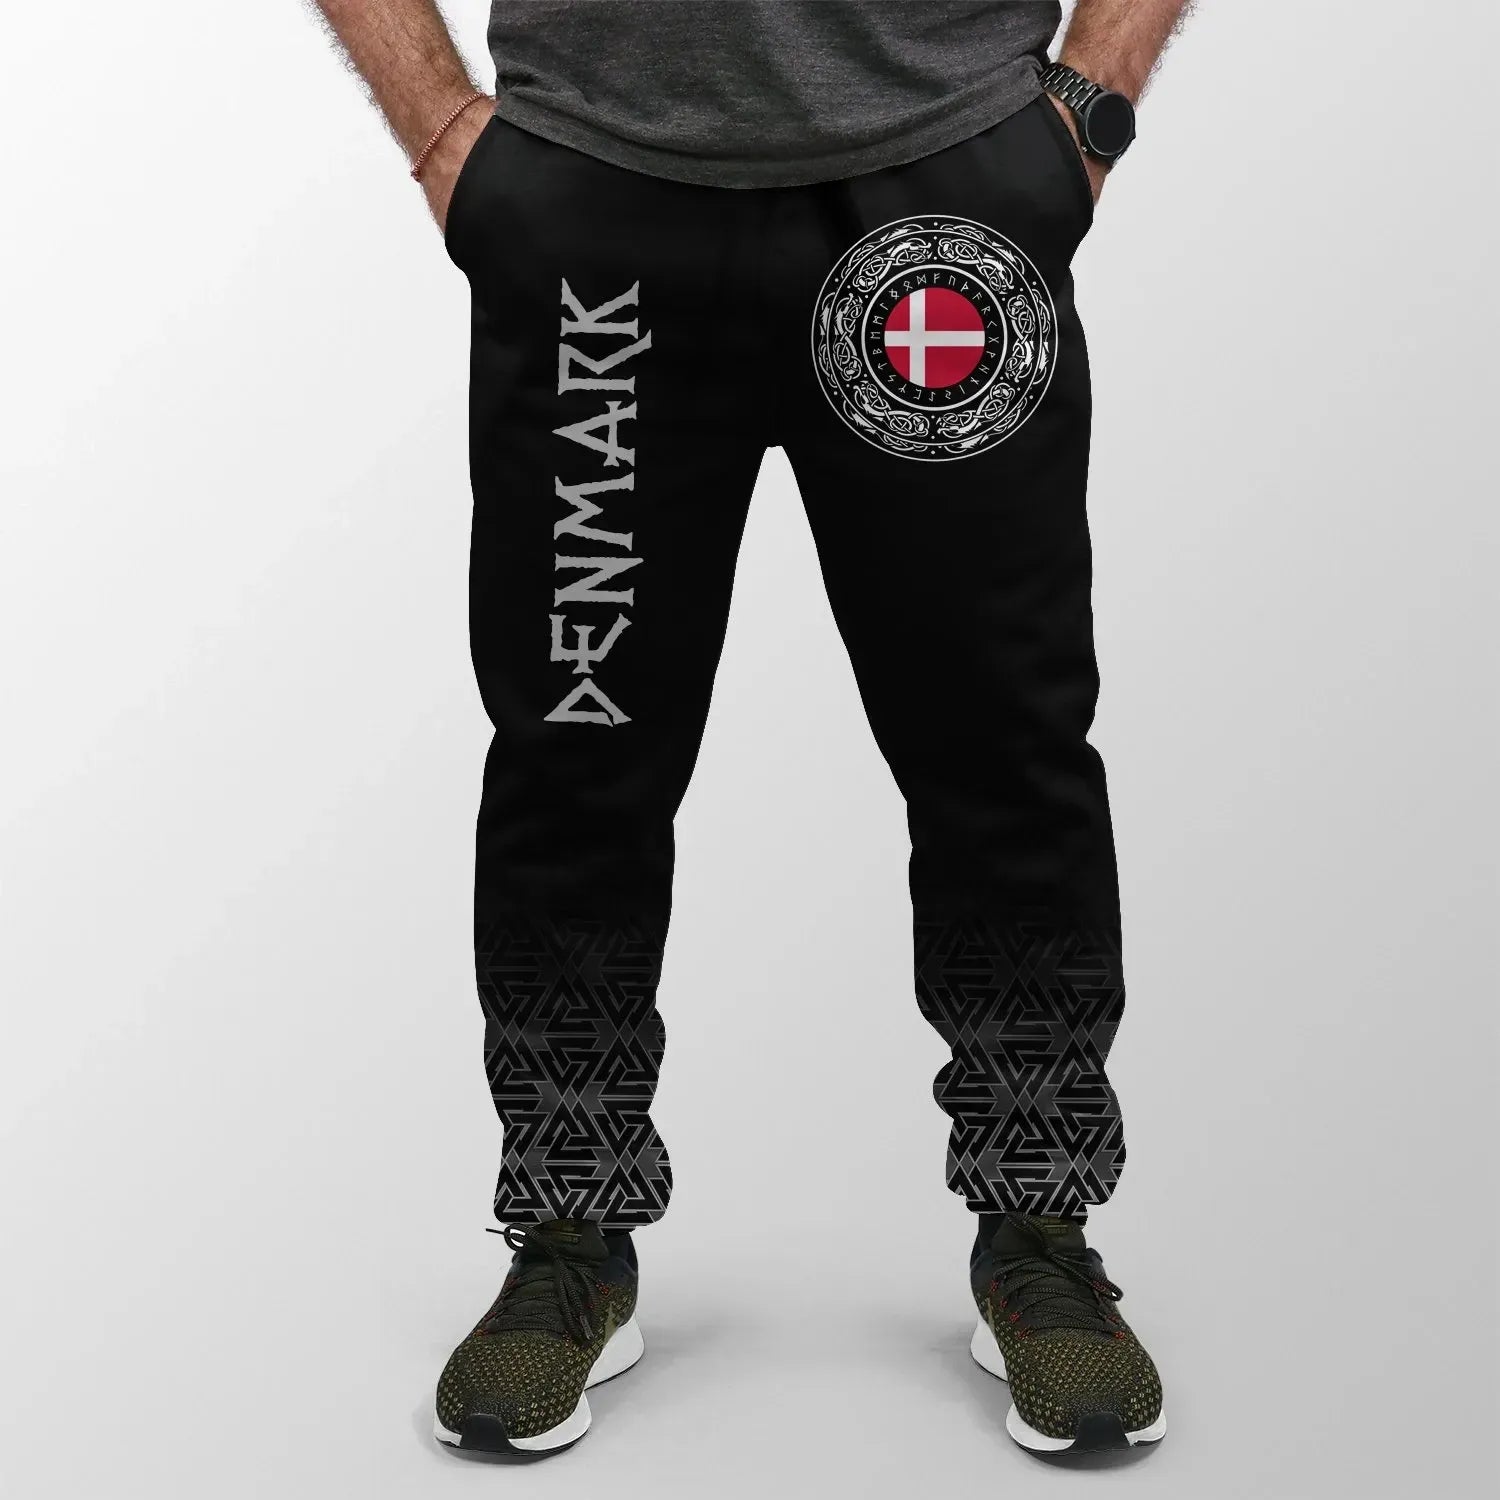 viking-jogger-womensmens-denmark-coat-of-arms